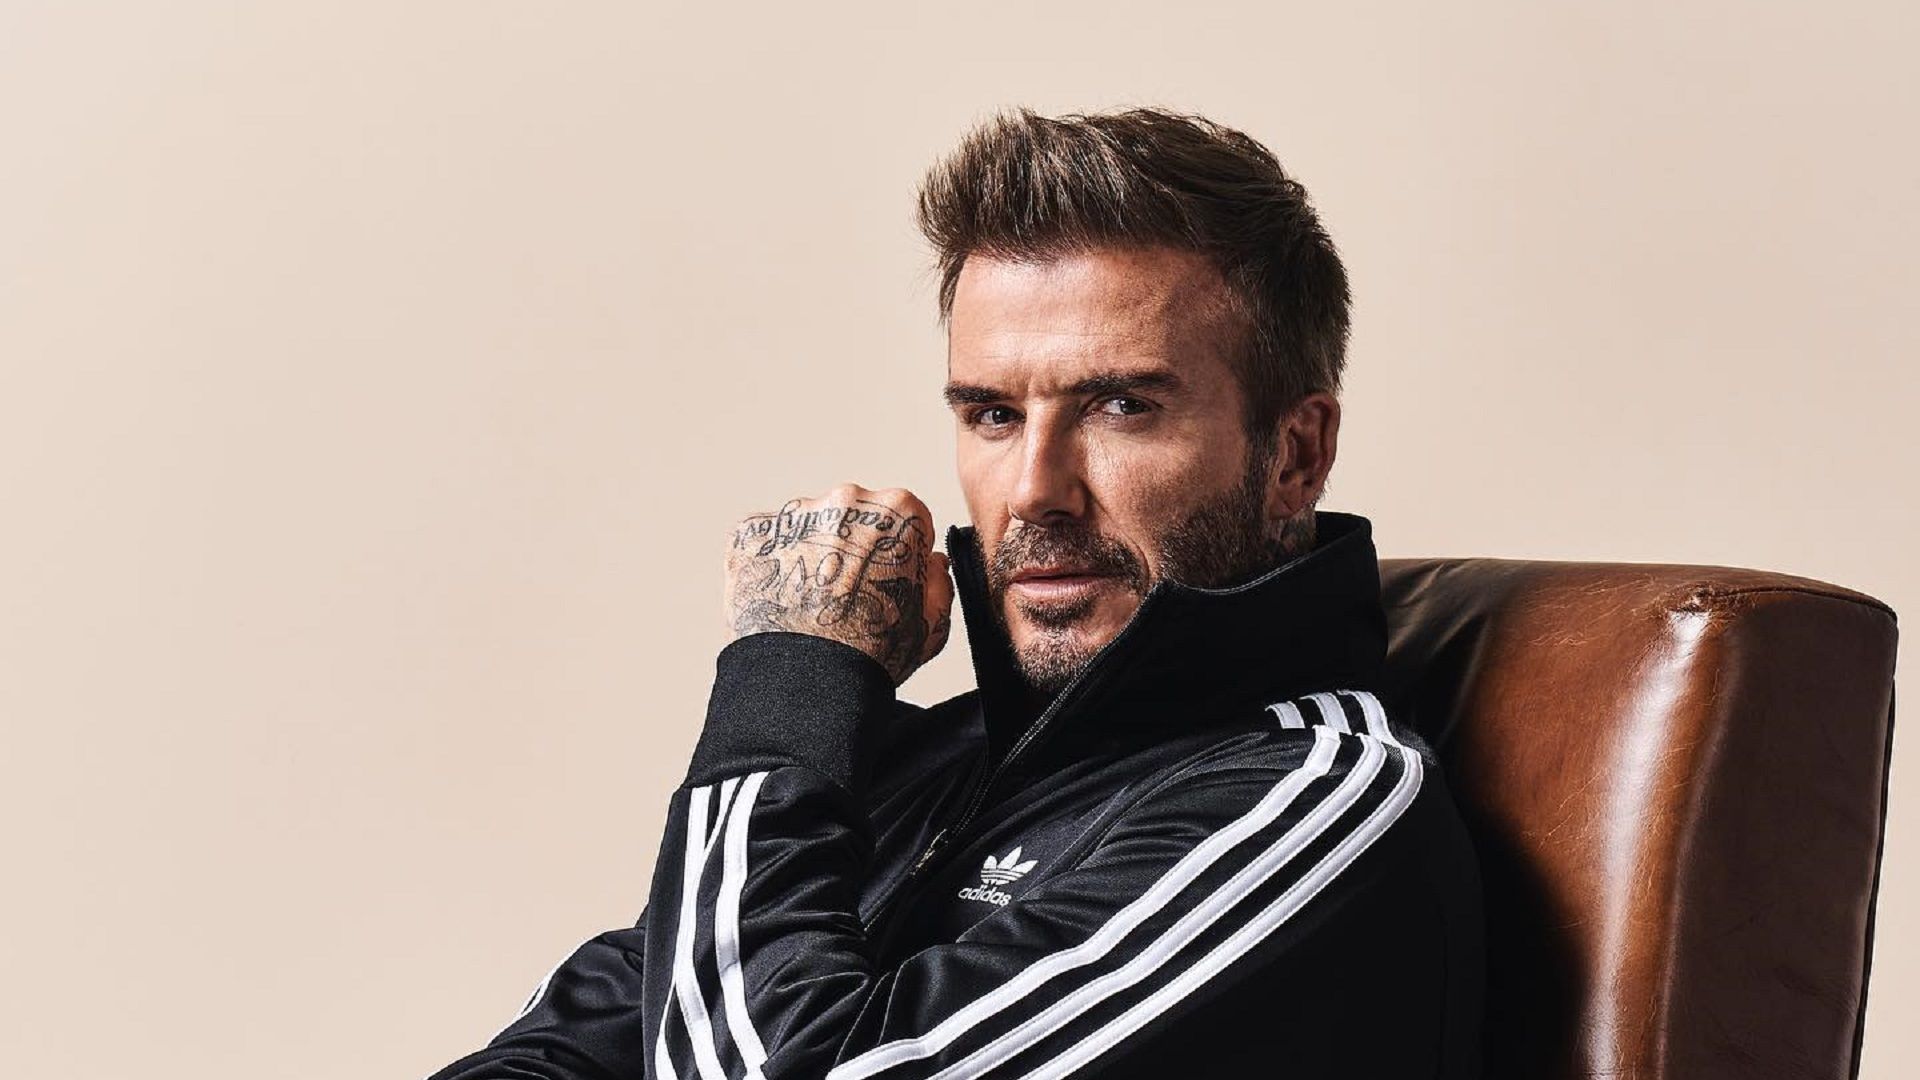 Becks in his kecks! David Beckham's sexiest underwear pictures - Mirror  Online